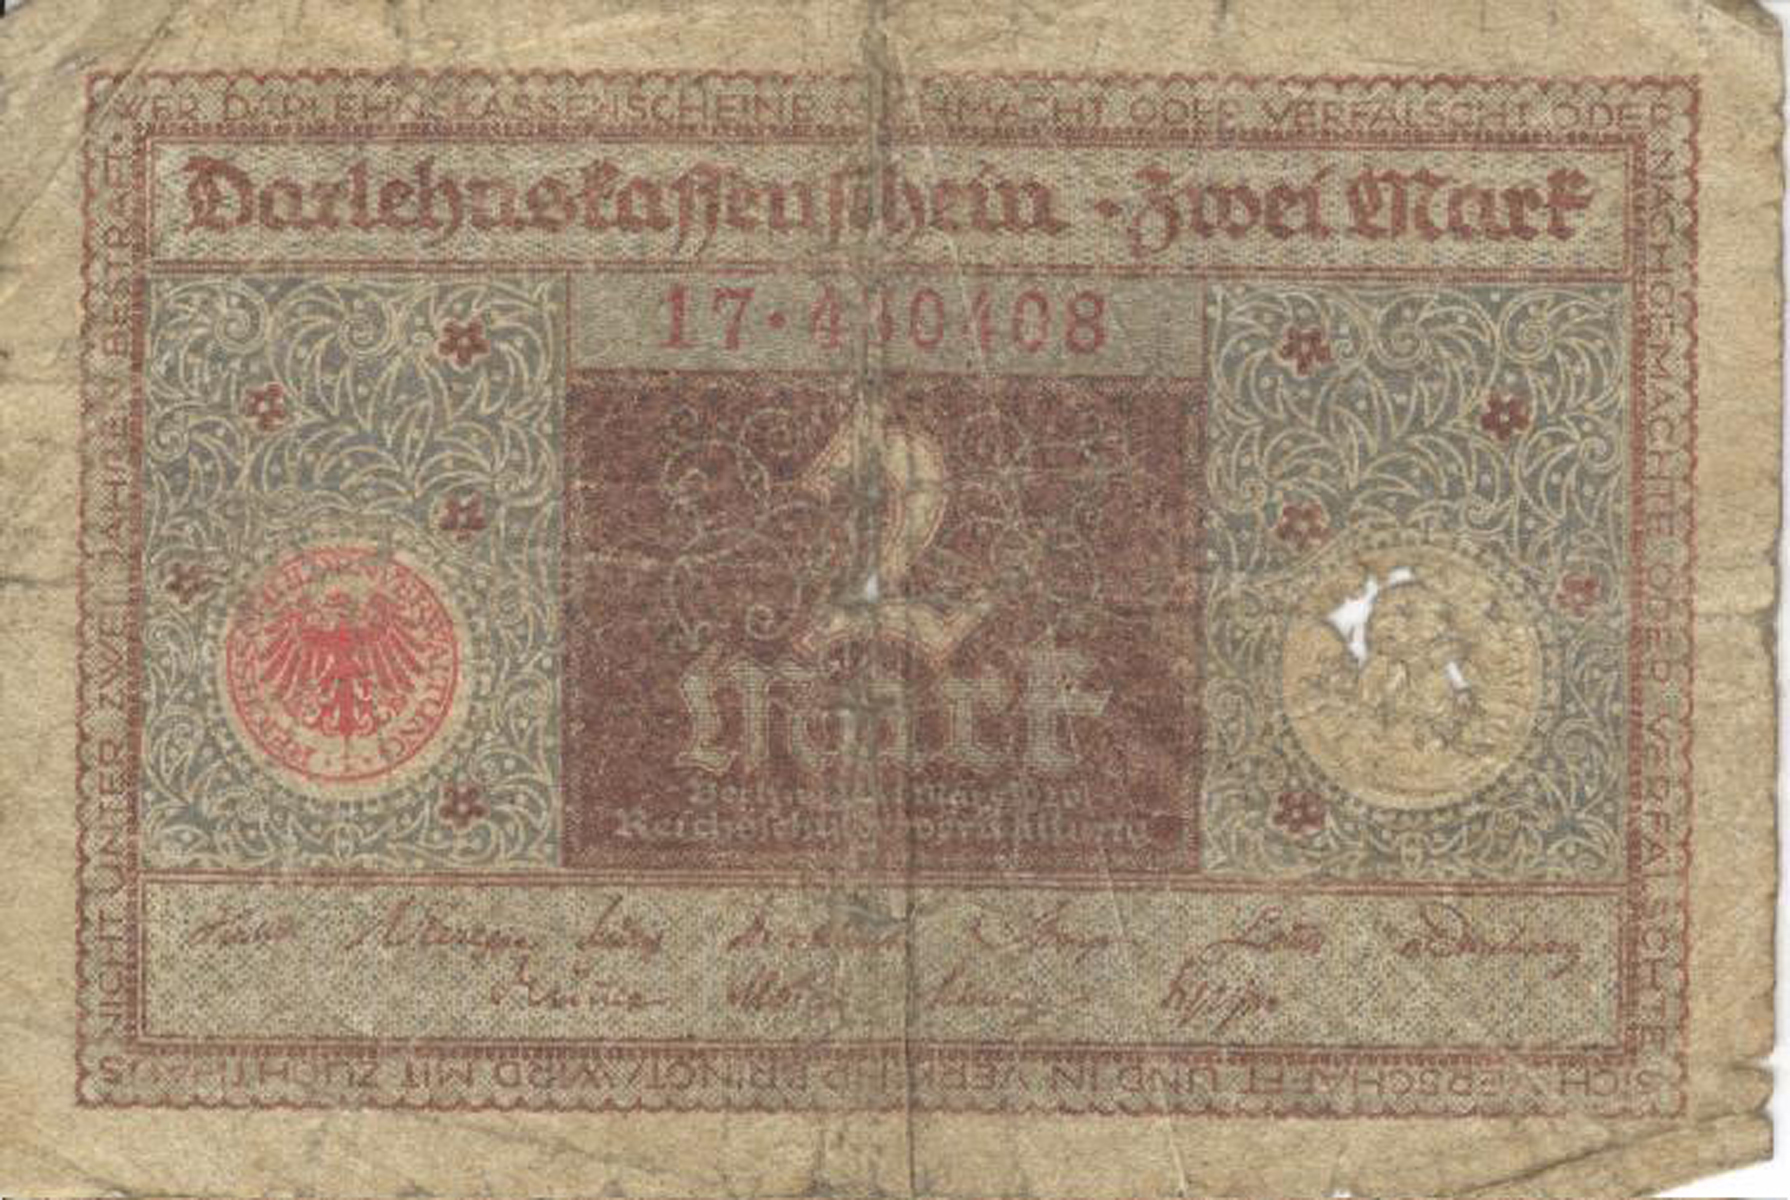 Darlehnskassenschein über 2 Mark von 1920 (Heimatmuseum und -Archiv Bad Bodendorf CC BY-NC-SA)